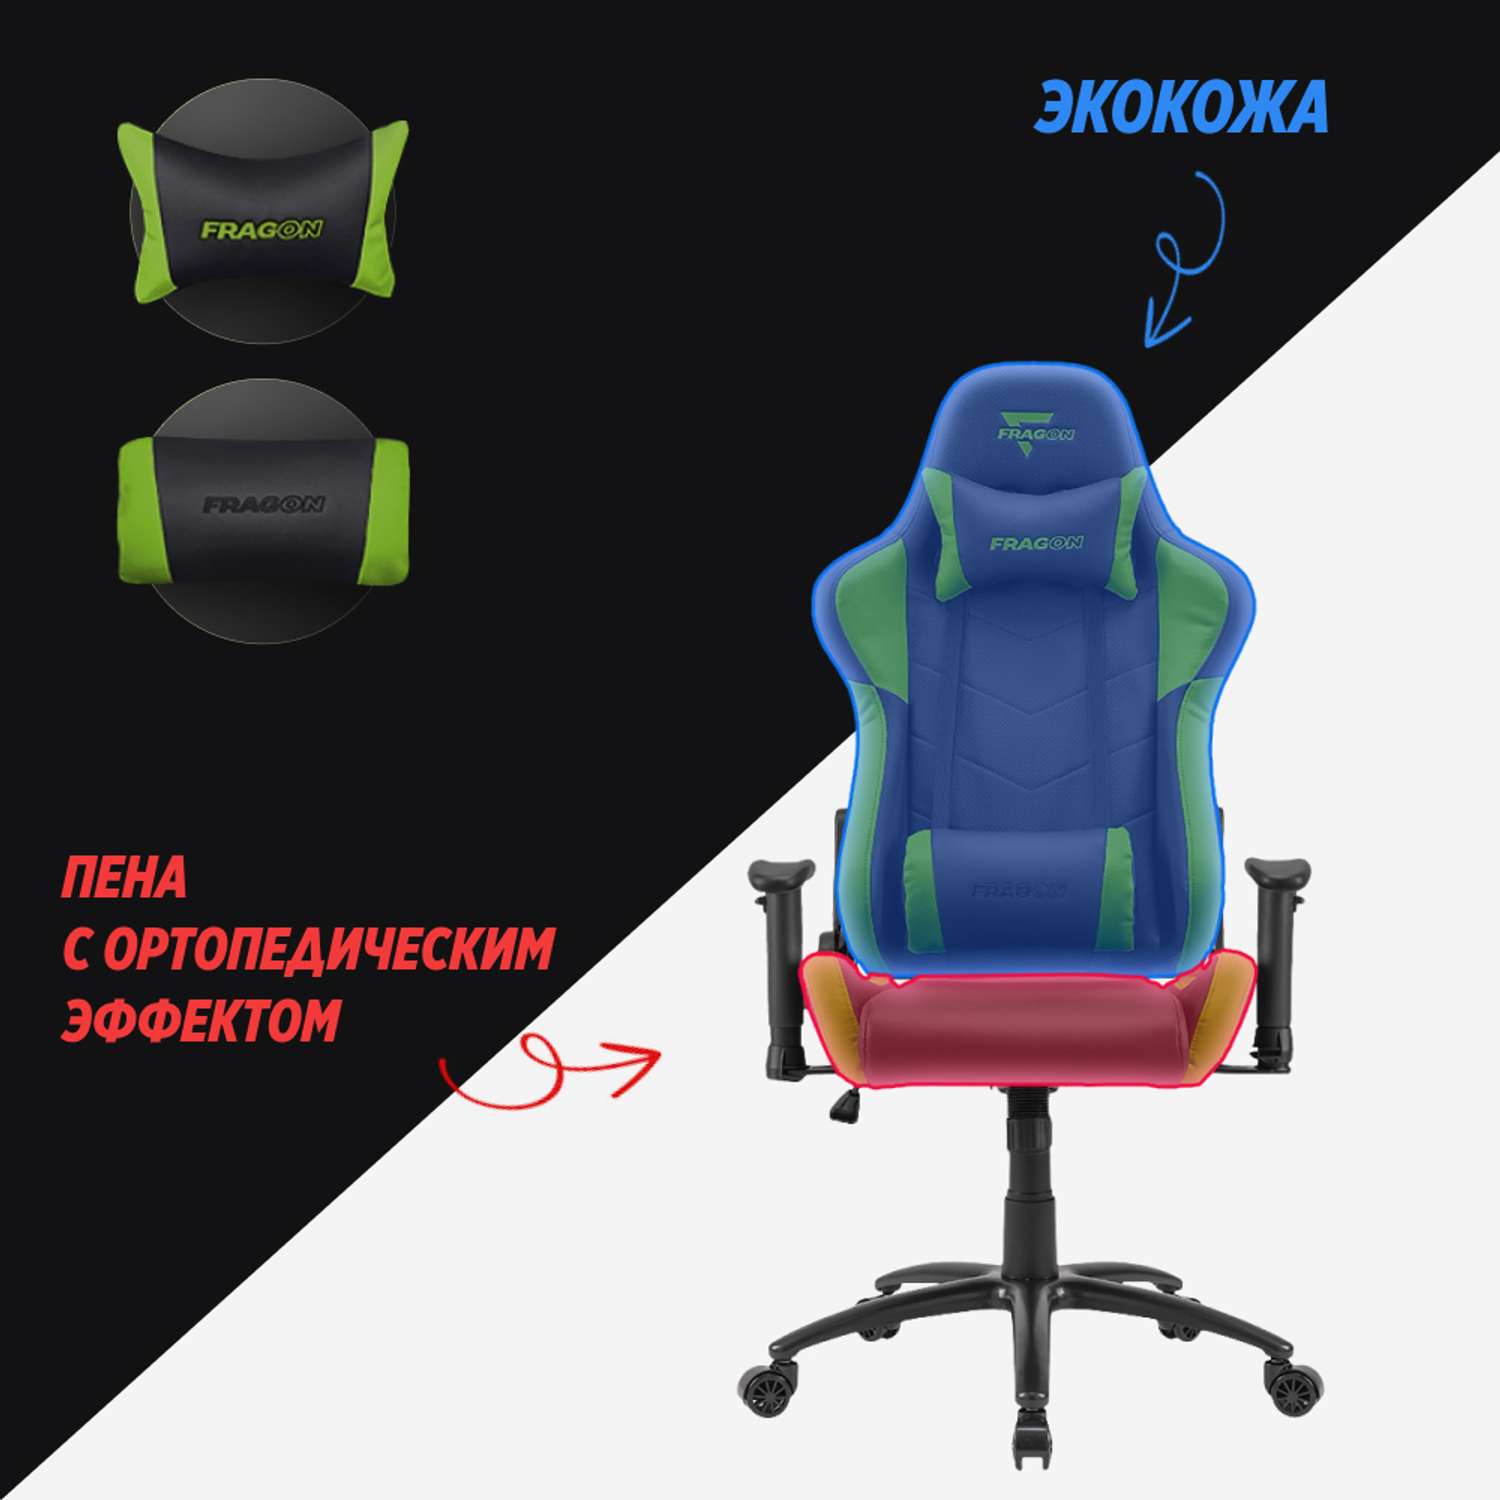 Компьютерное кресло GLHF серия 3X Black/Green - фото 4